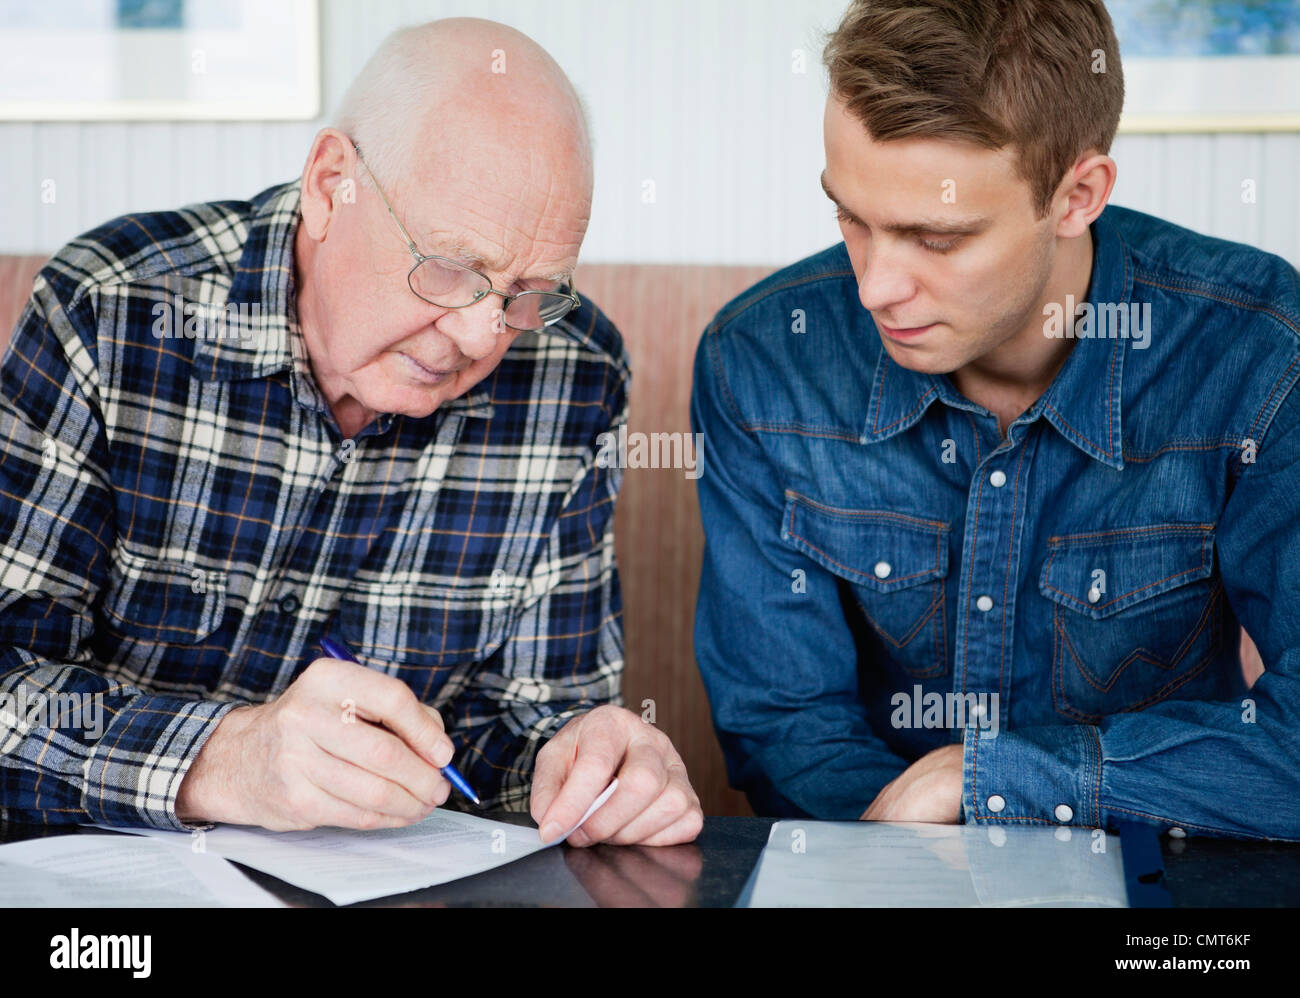 Jeune homme grand-père aide pour remplir un formulaire Banque D'Images